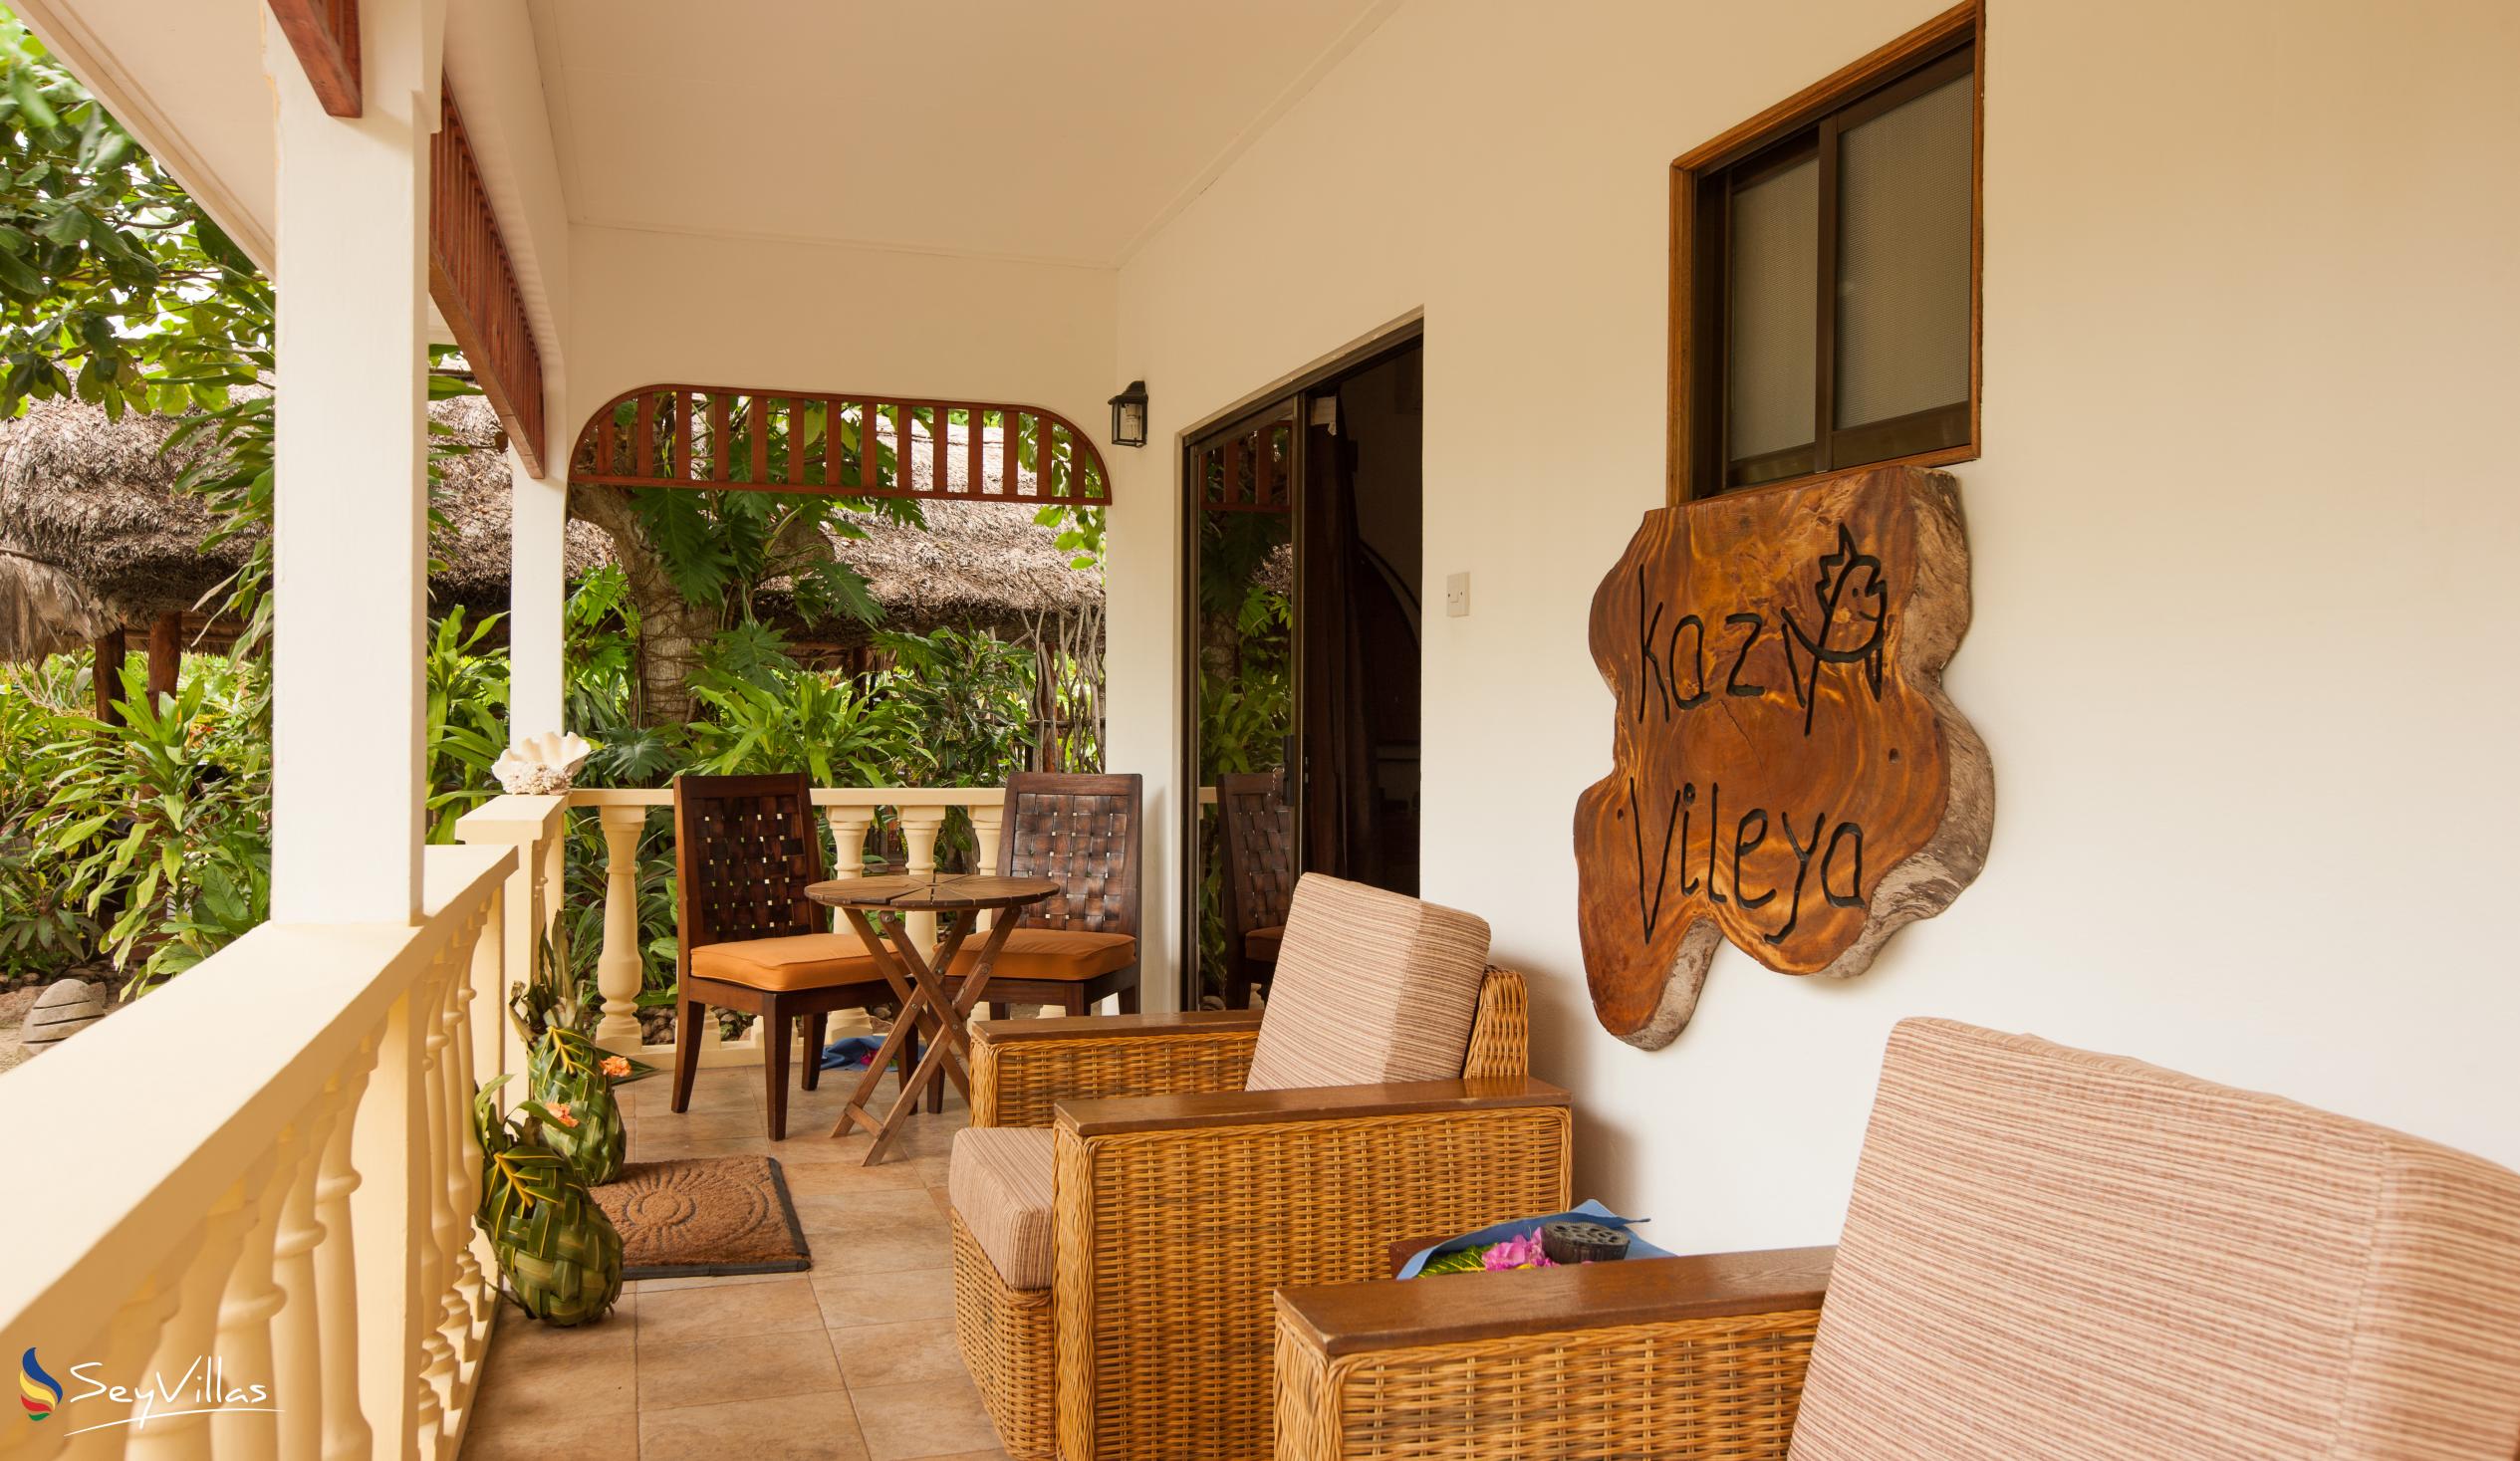 Photo 81: Domaine Les Rochers - 1-Bedroom Bungalow Kaz Vileya - La Digue (Seychelles)